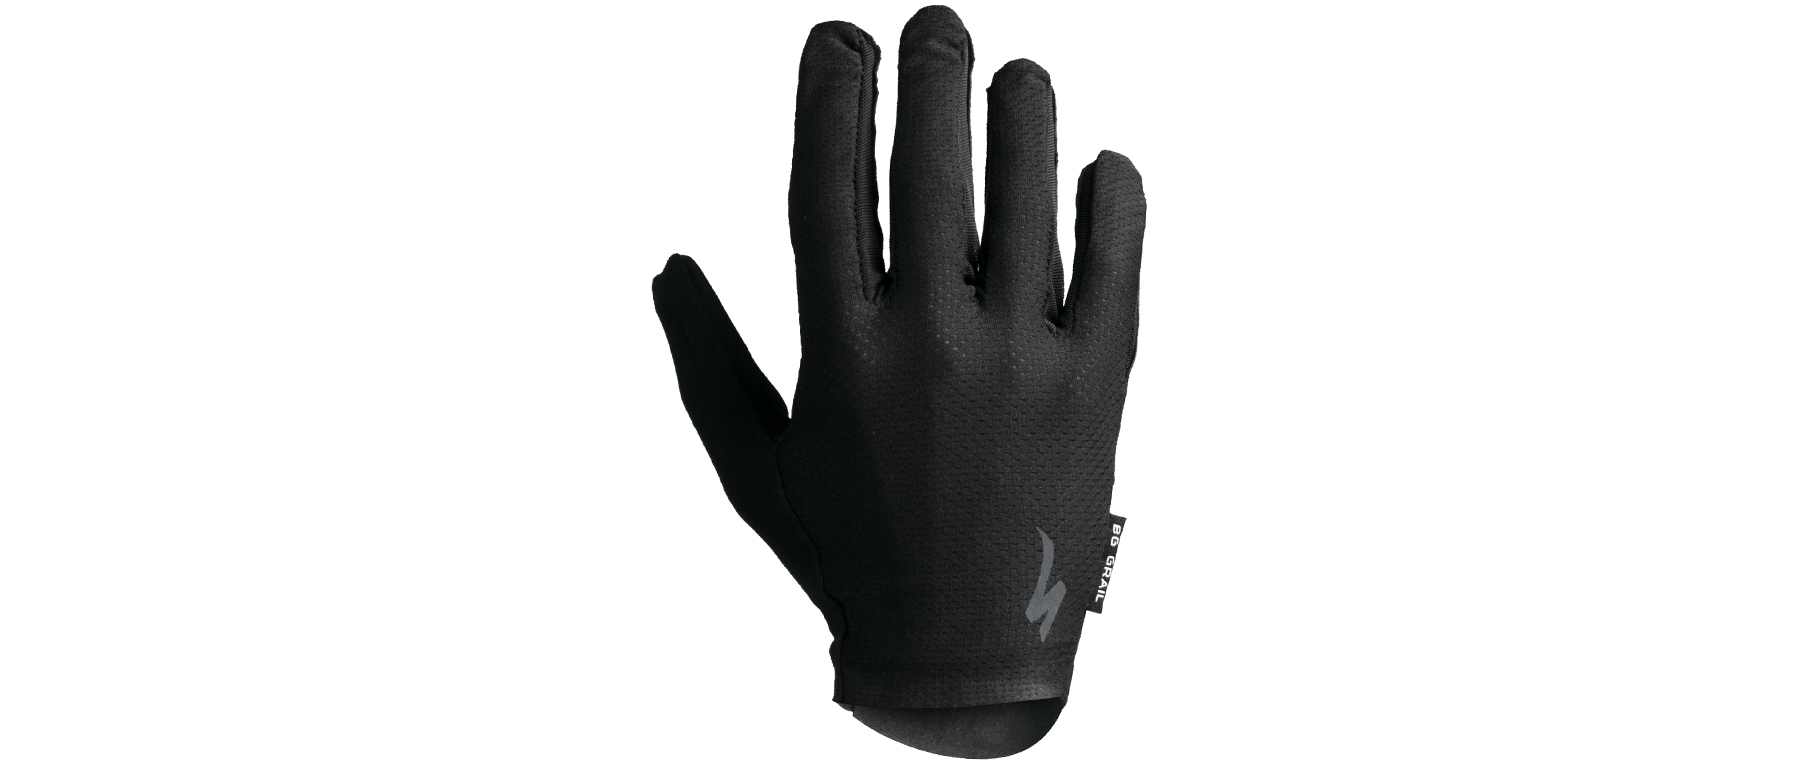 Specialized Body Geometry Grail LF Glove